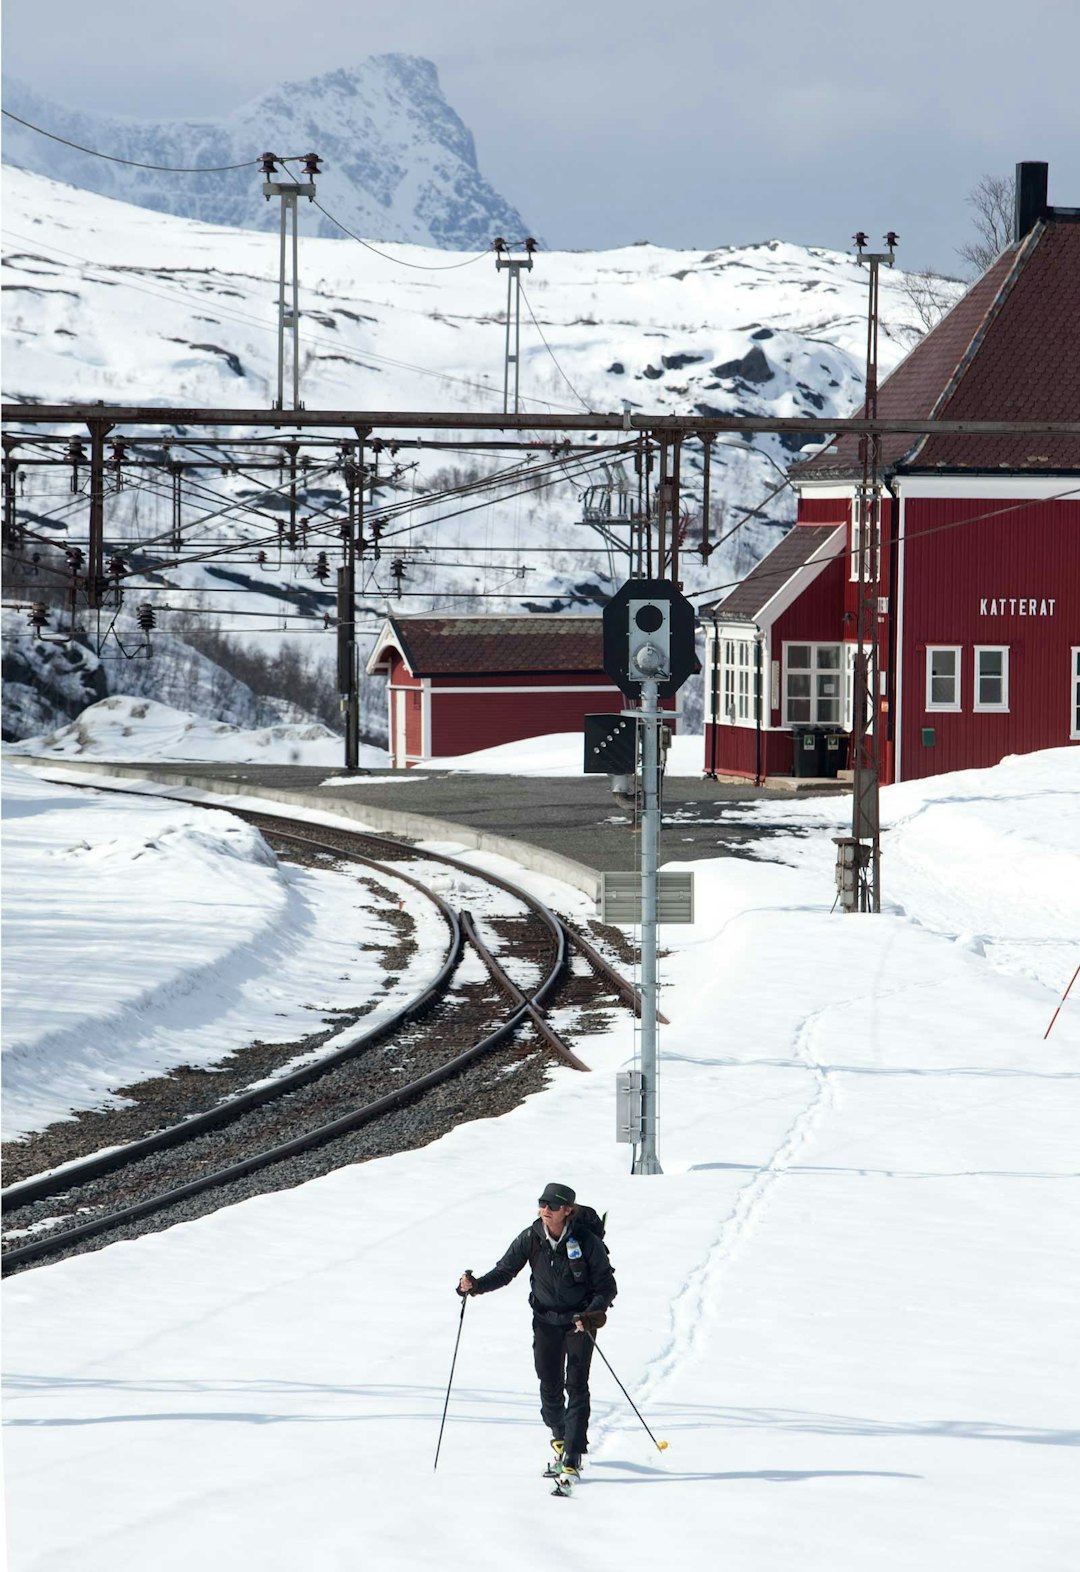 Lars Thulin forlater Katterat jernbanestasjon på tur mot Hunddalshyttene. Rombakstøtta vises i bakgrunnen. Foto: Nicklas Blom / Toppturer rundt Narvik.